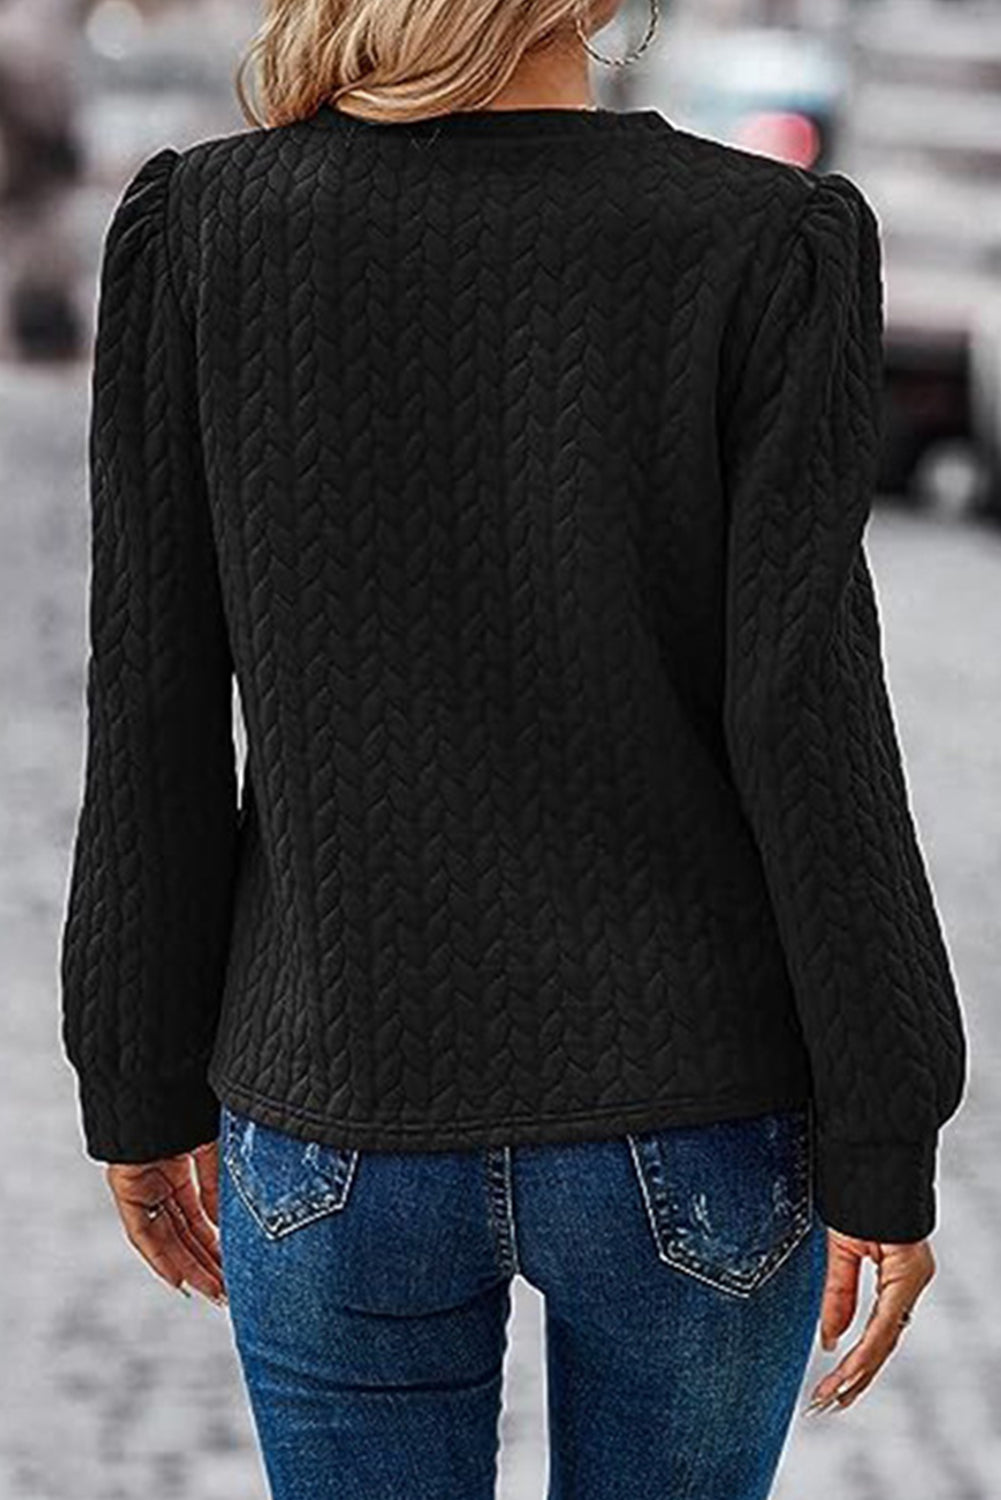 Schwarzes Sweatshirt mit Zopfmuster und Puffärmeln